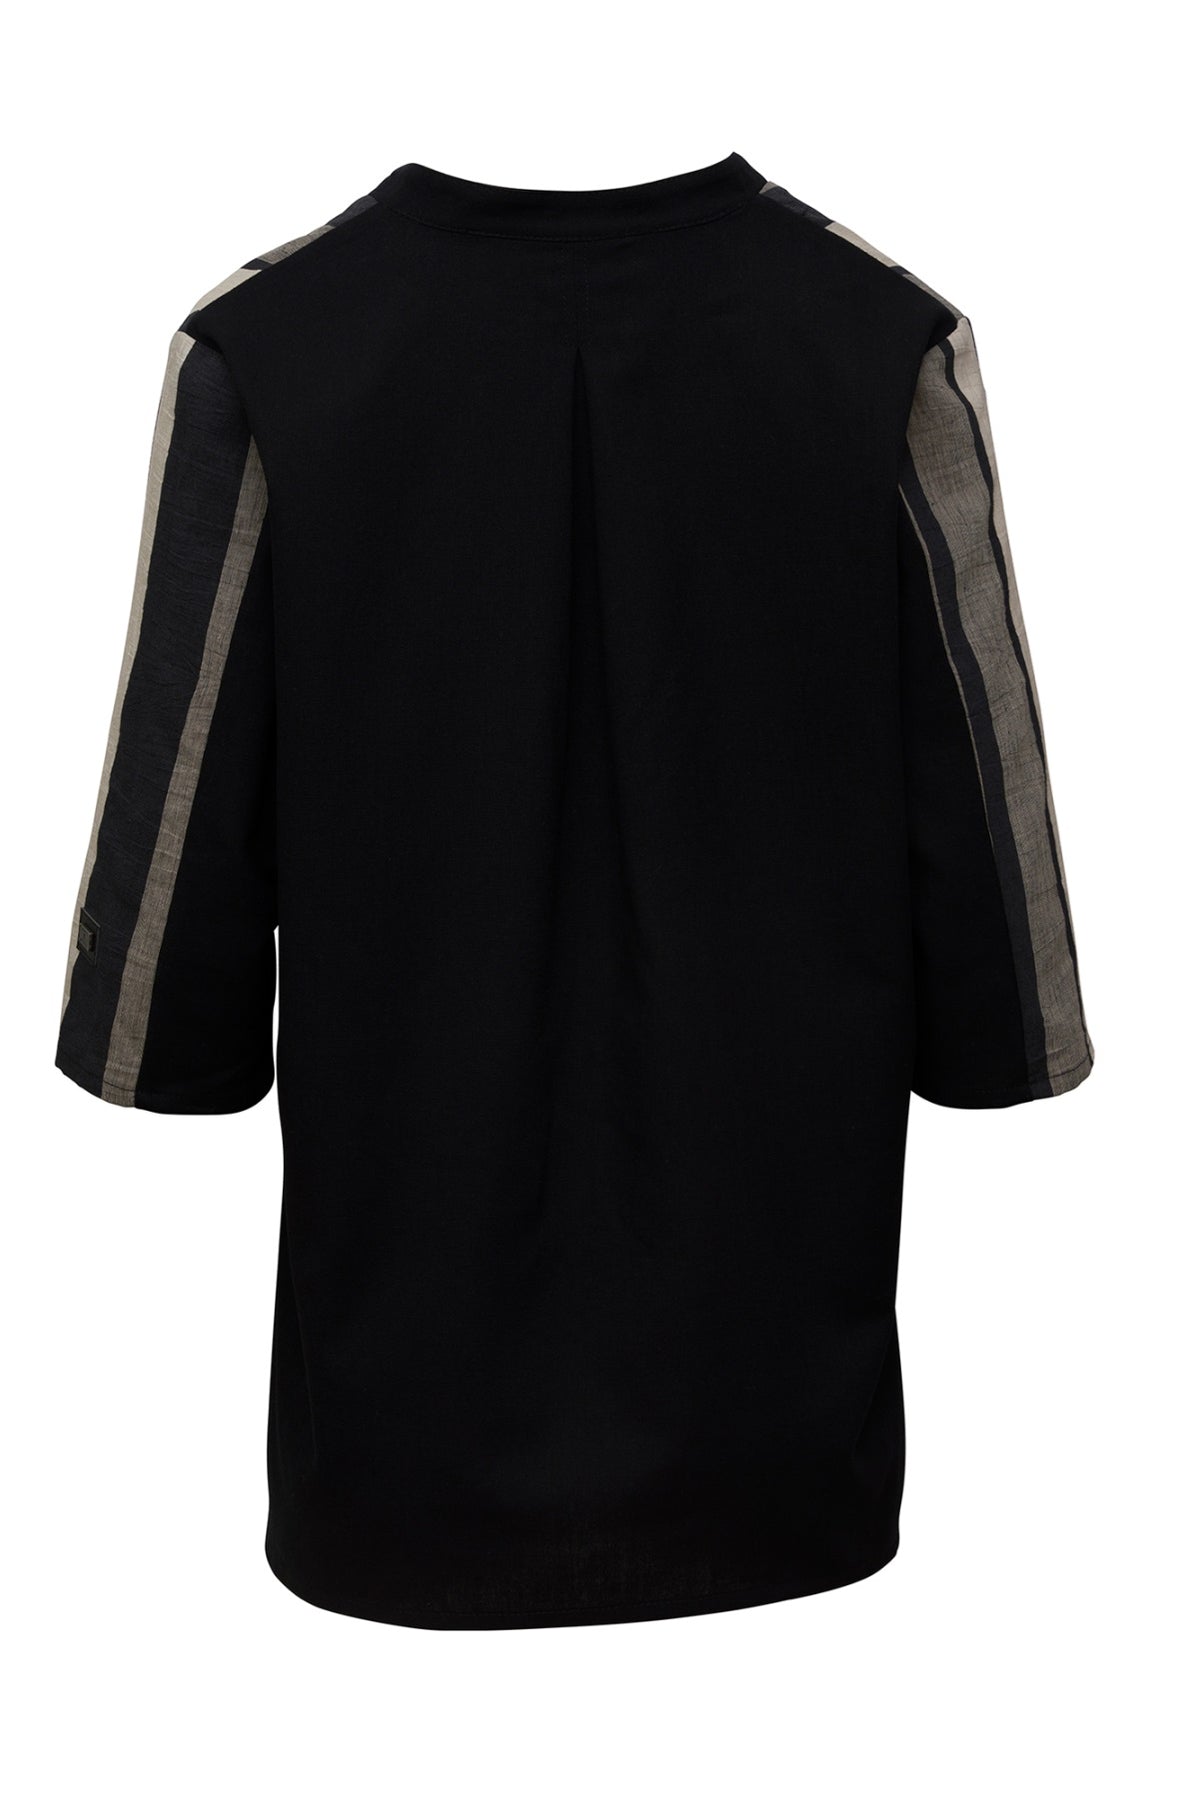 E Avantgarde skjorte/jakke 14120-4, Linen